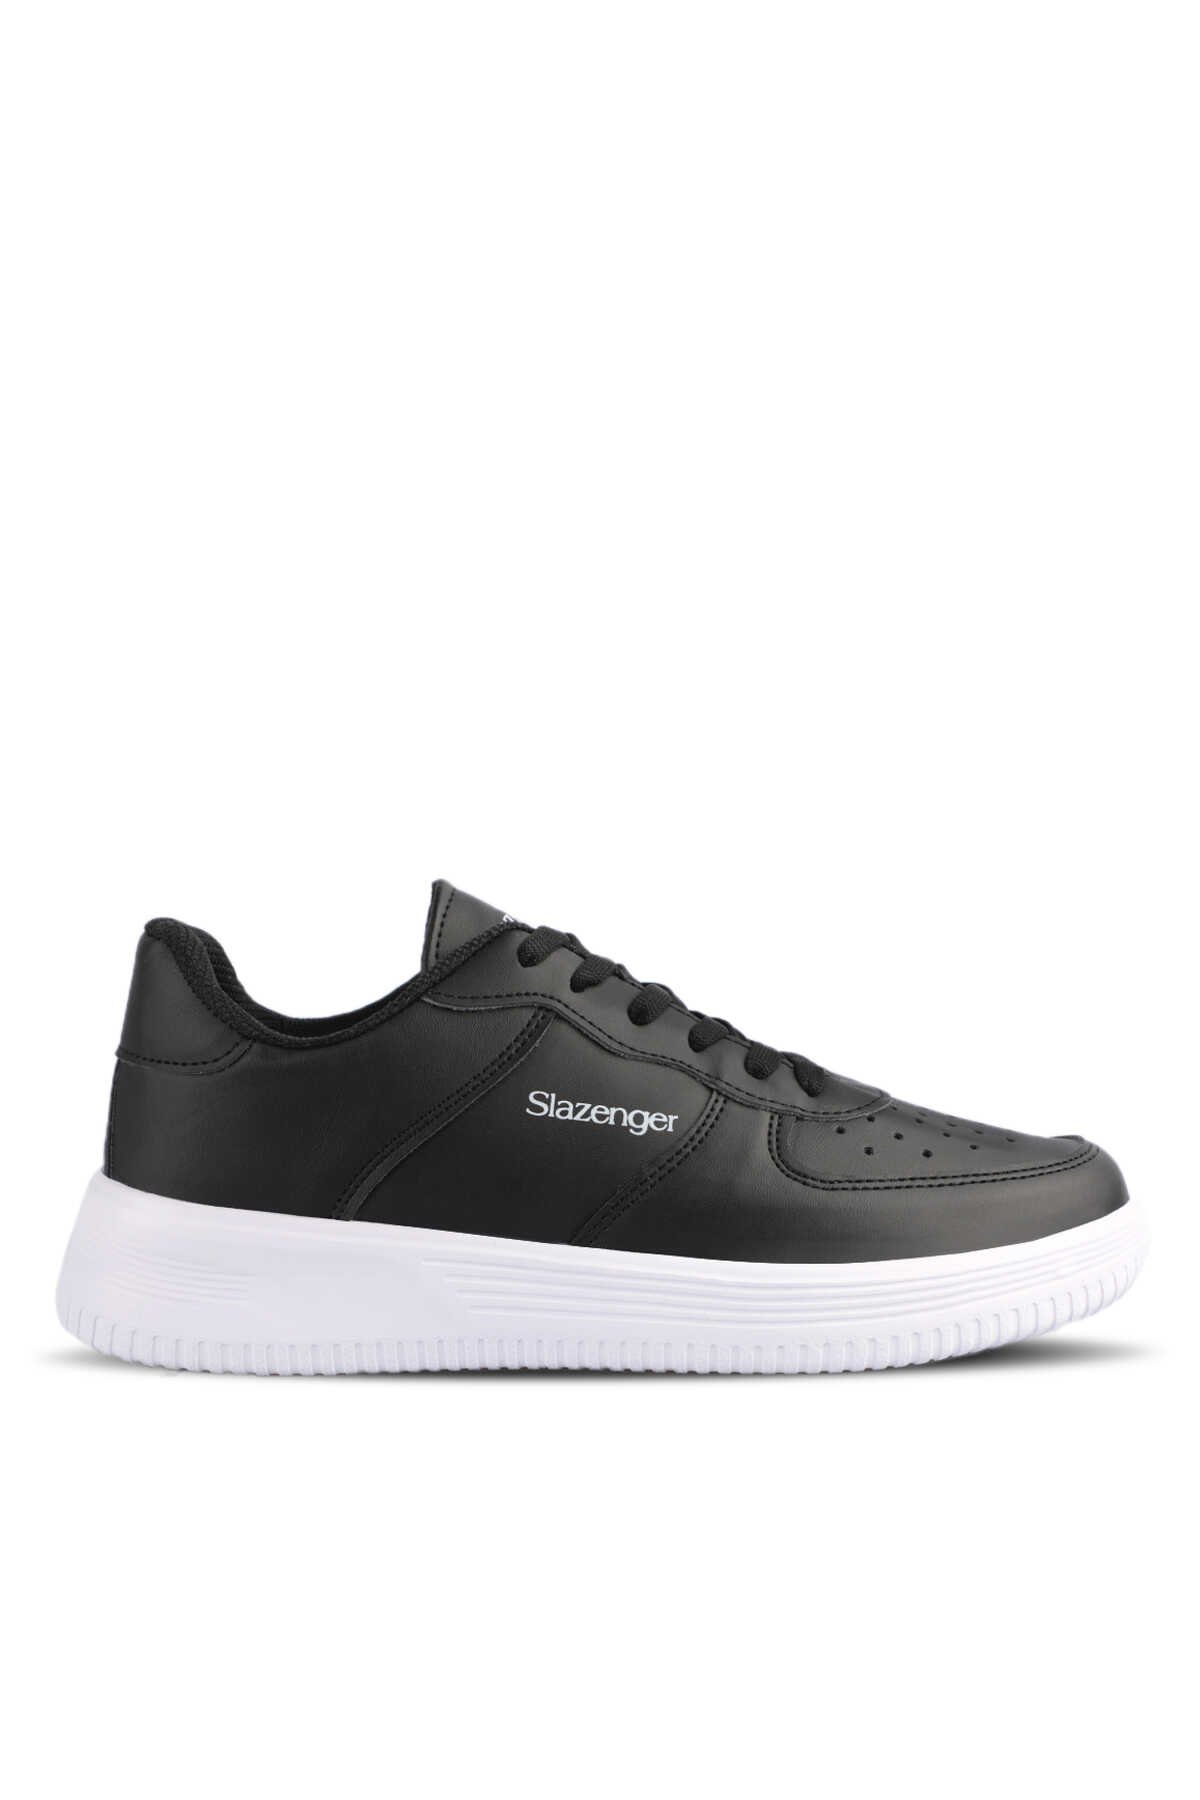 Slazenger - Slazenger EKUA Sneaker Erkek Ayakkabı Siyah / Beyaz